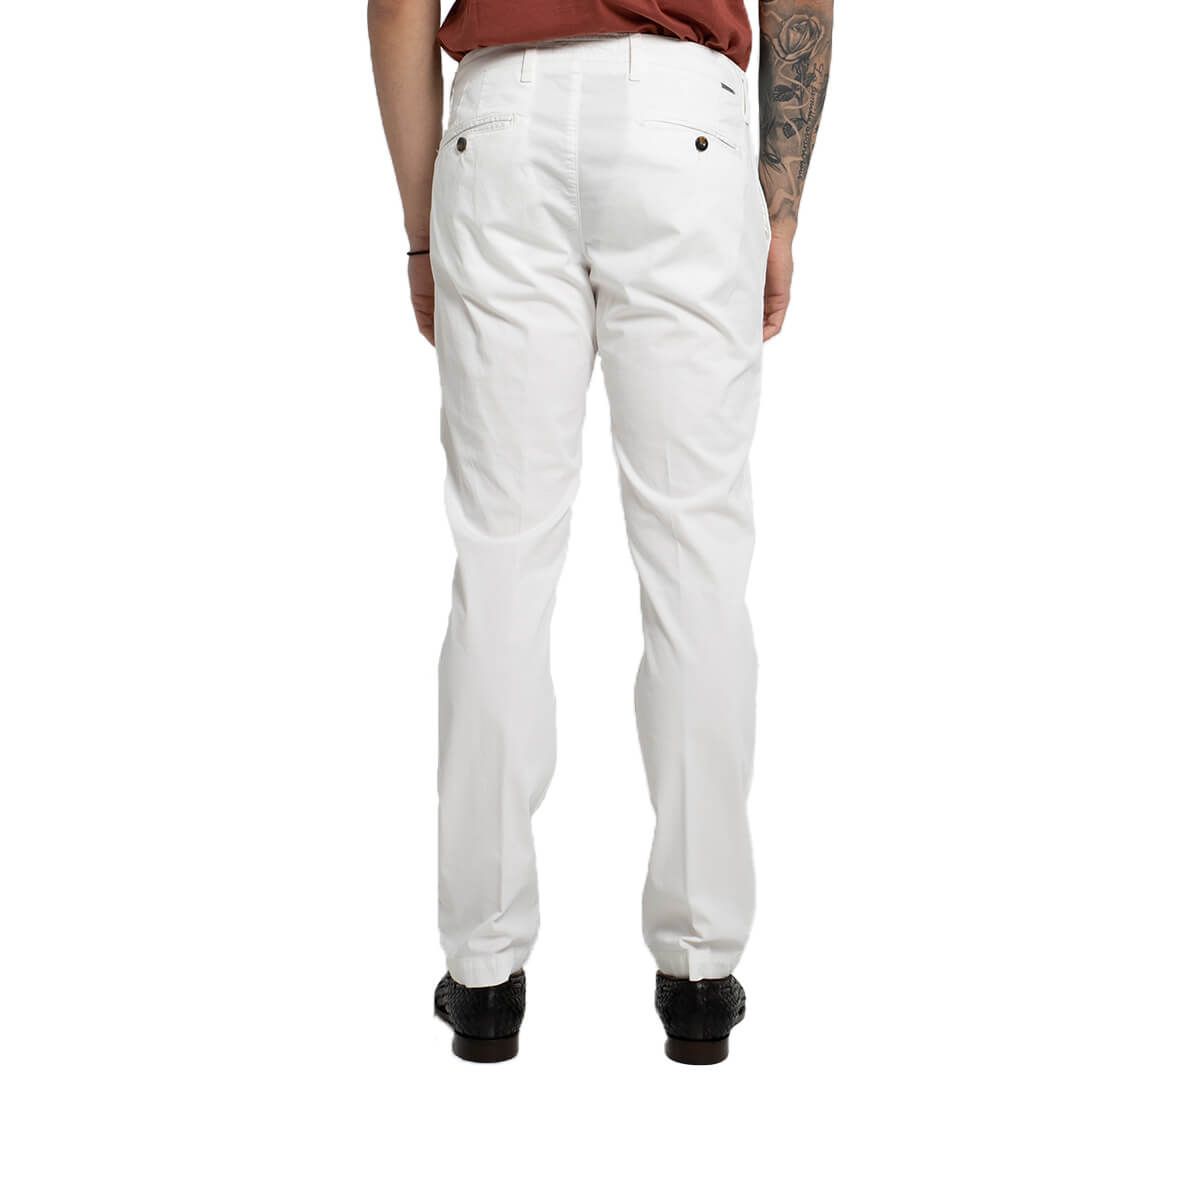 Straight-Leg Chino Trousers/White